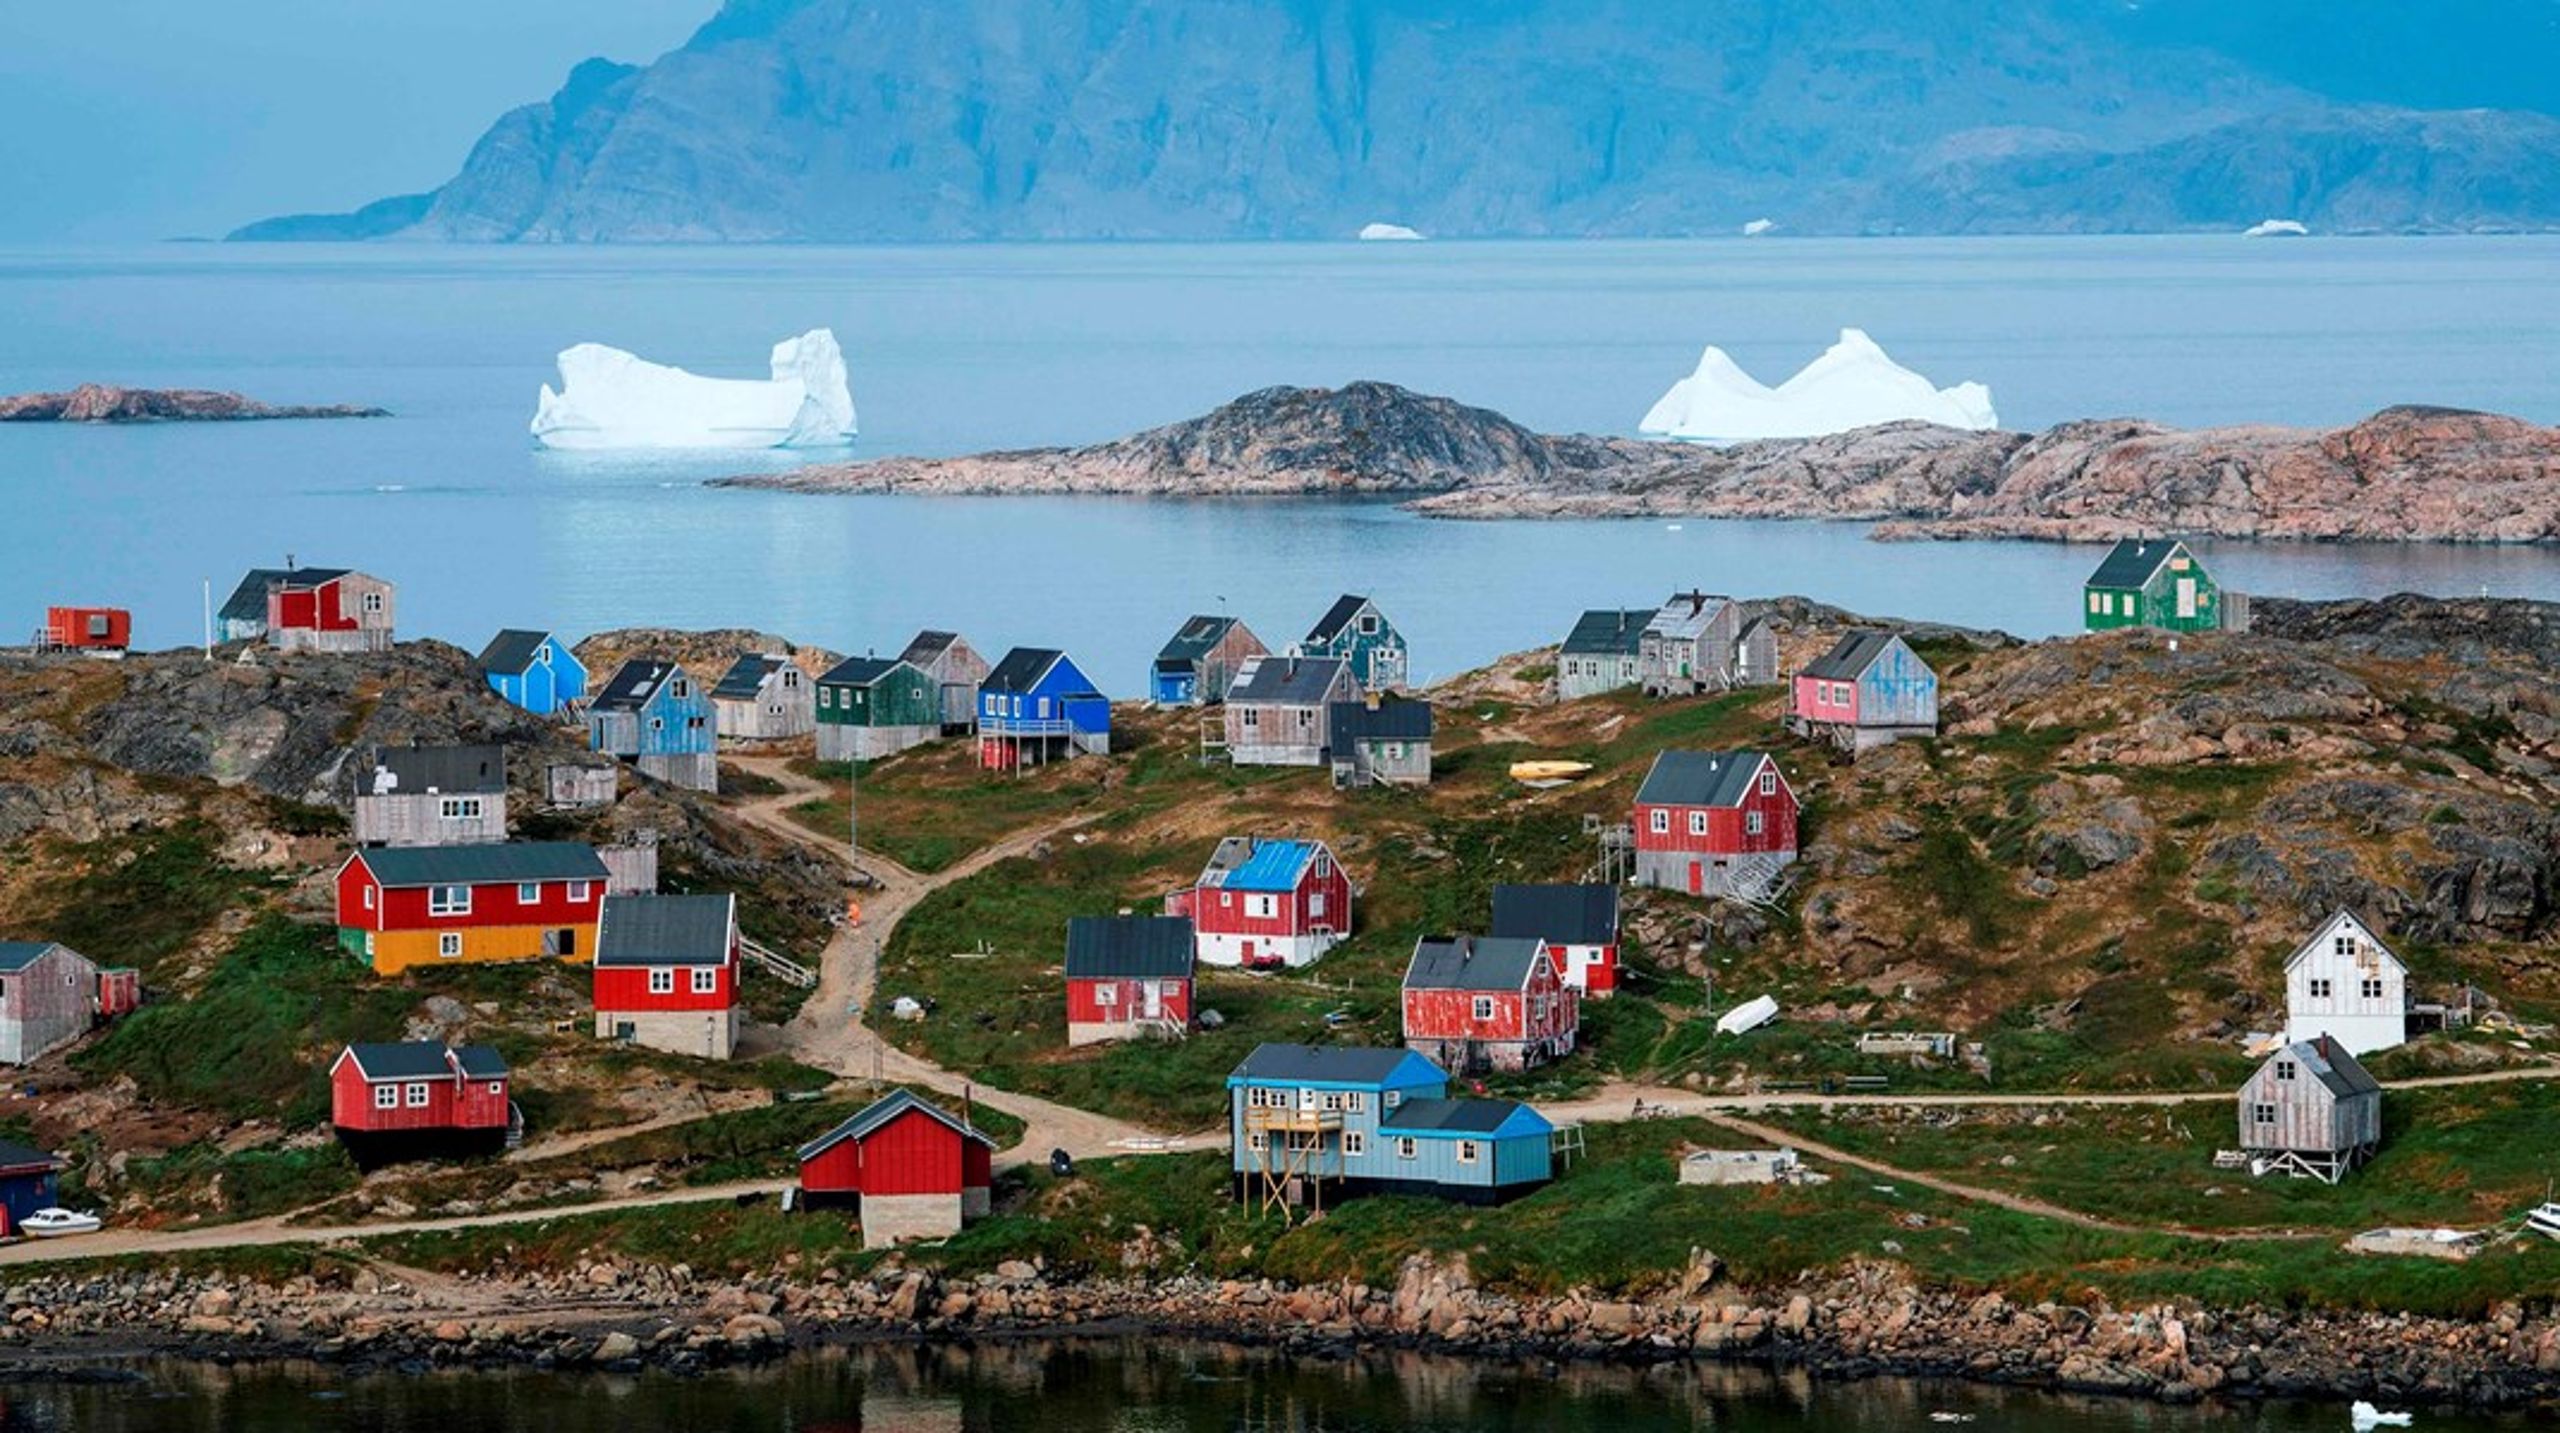 "Sammen med det øvrige Kongeriget Danmark, er Grønland medlem af Nato, som i disse år retter blikket mere mod Det Høje Nord," udtaler&nbsp;Vivian Motzfeldt.